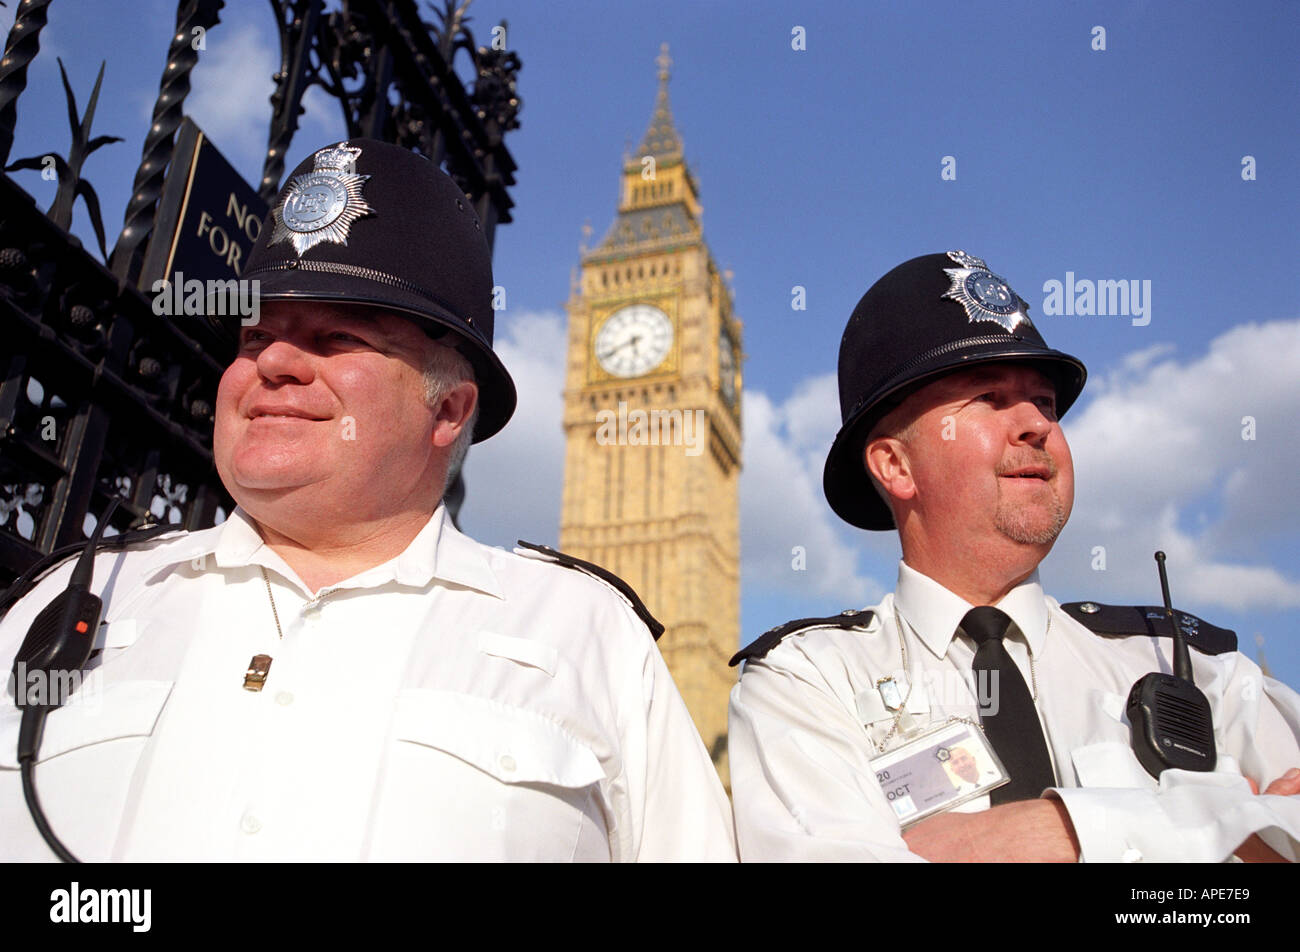 Polizisten außerhalb der Houses of Parliament mit Big Ben in London England UK Stockfoto